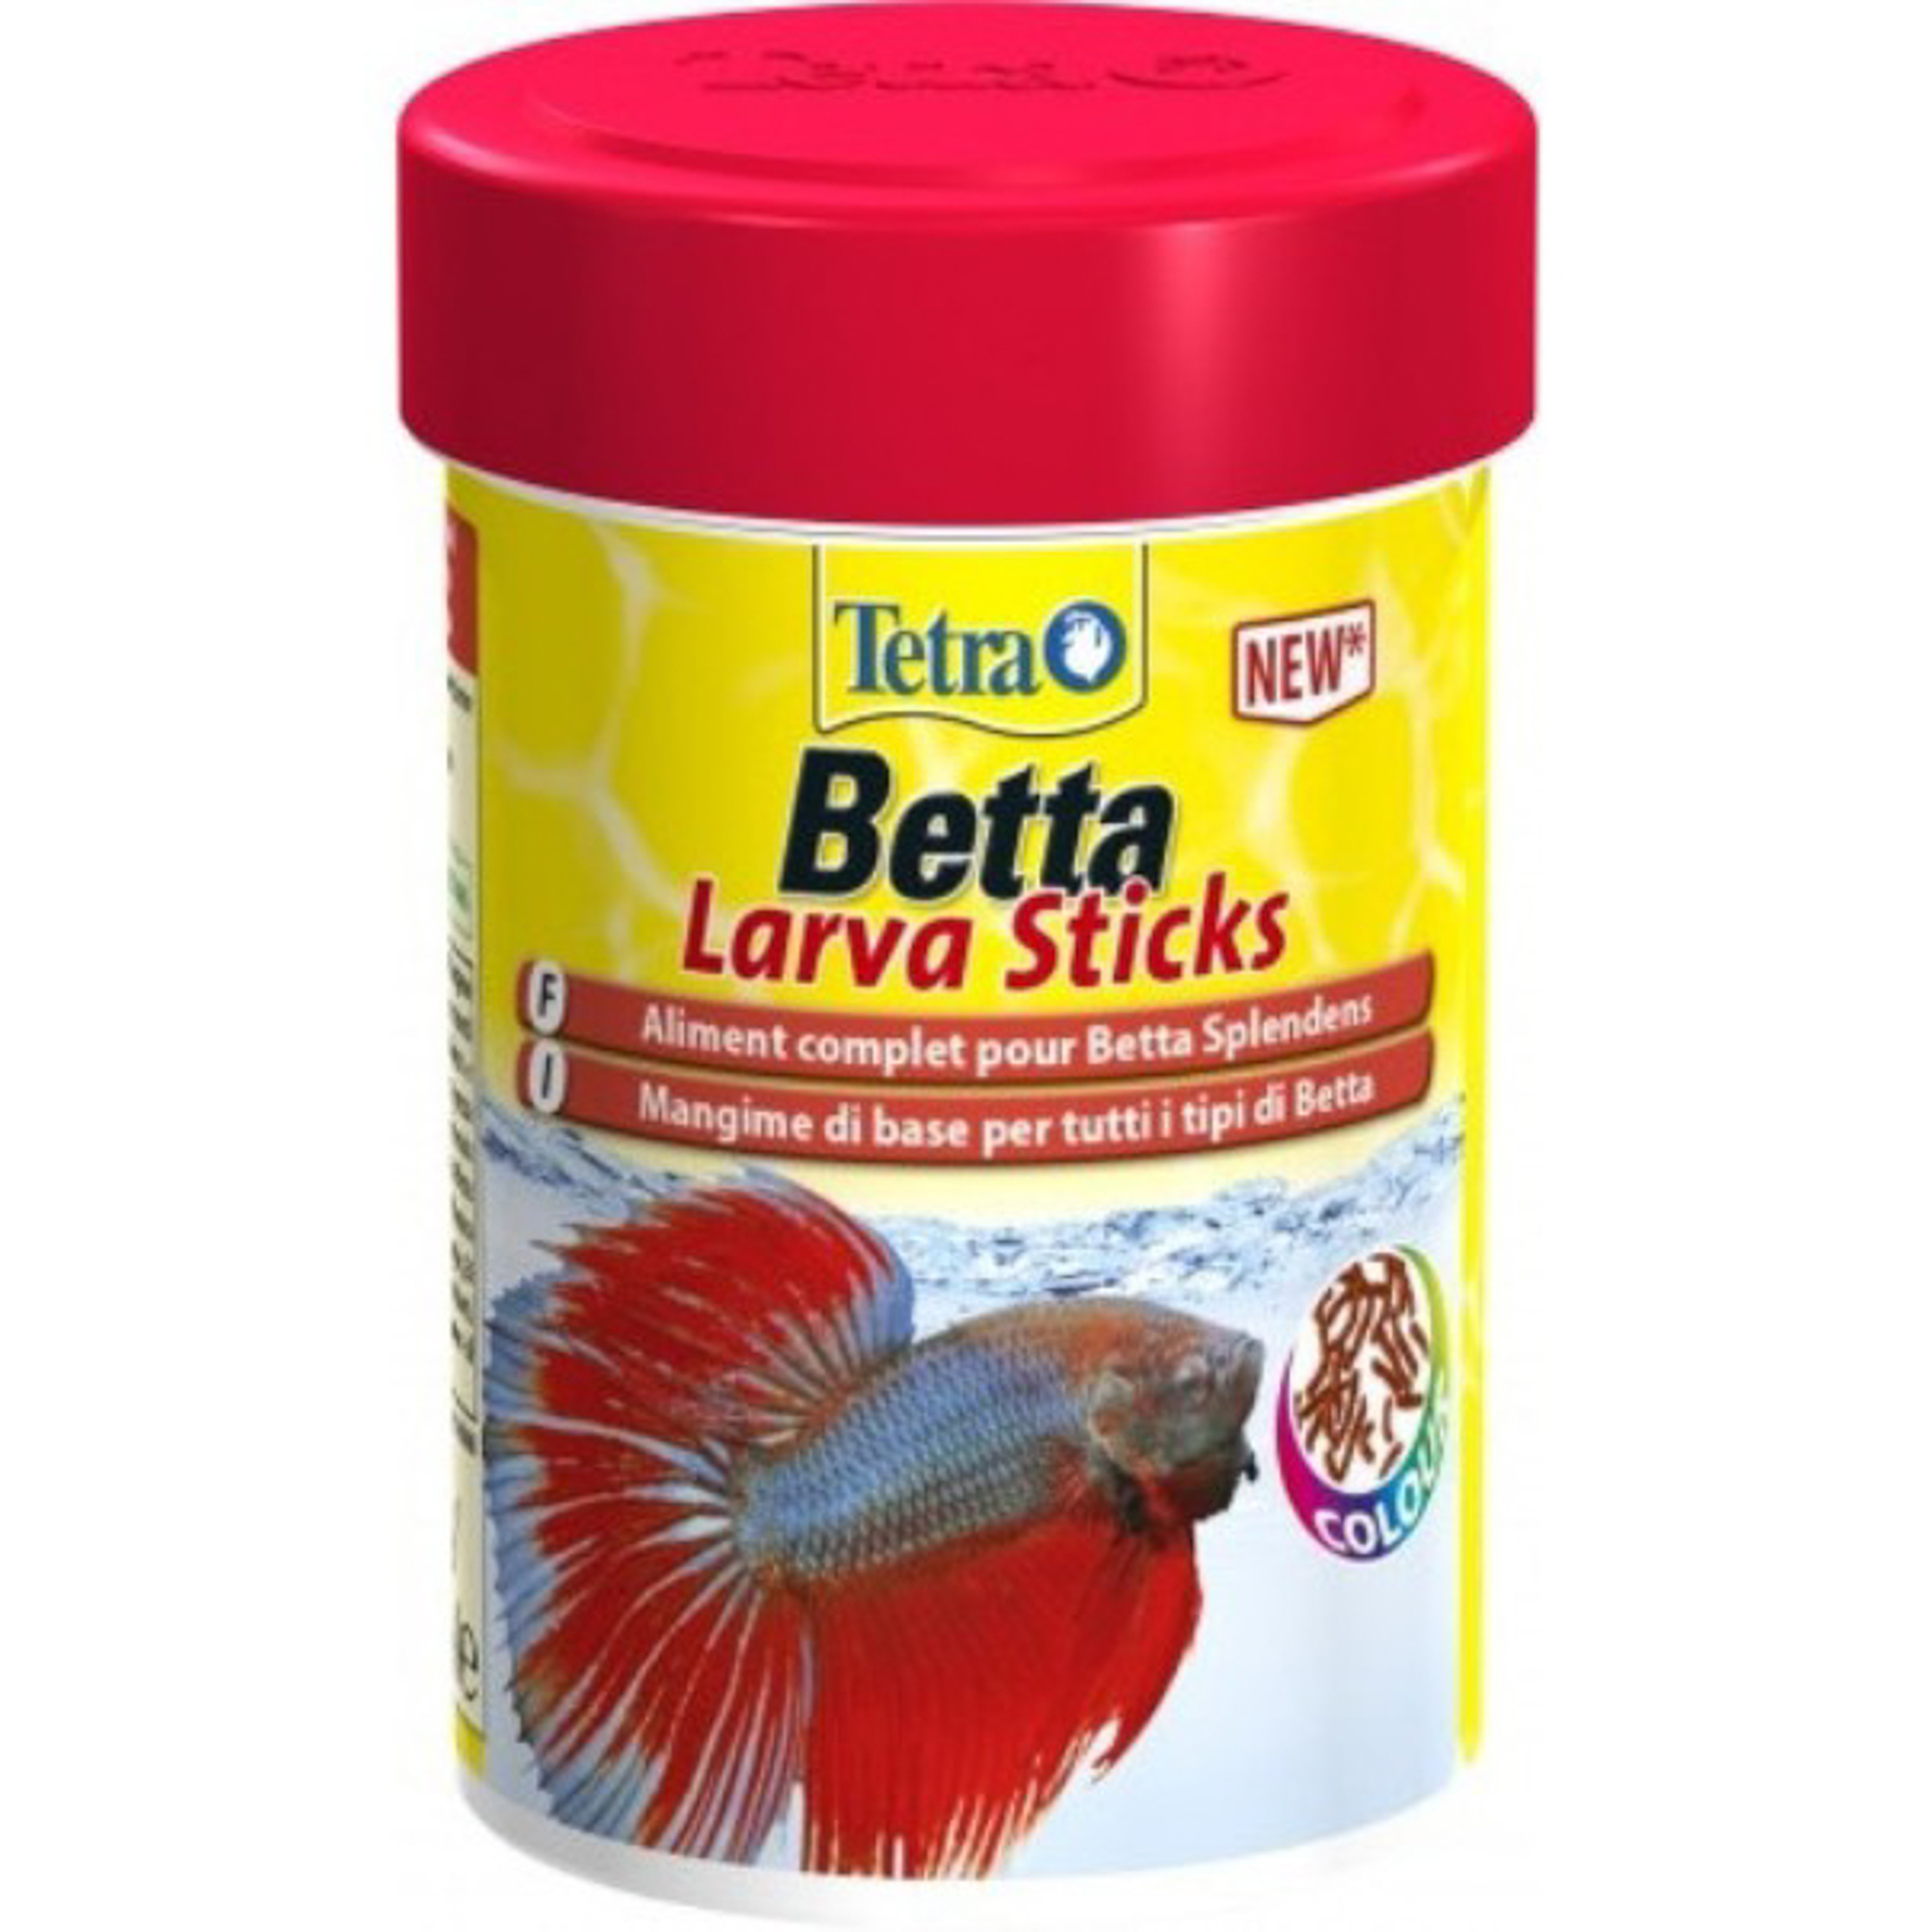 Корм для рыб TETRA Betta Larva Sticks 100мл tetra betta larvasticks cбалансированный по питательным веществам корм для петушков и других лабиринтовых рыб 5 гр